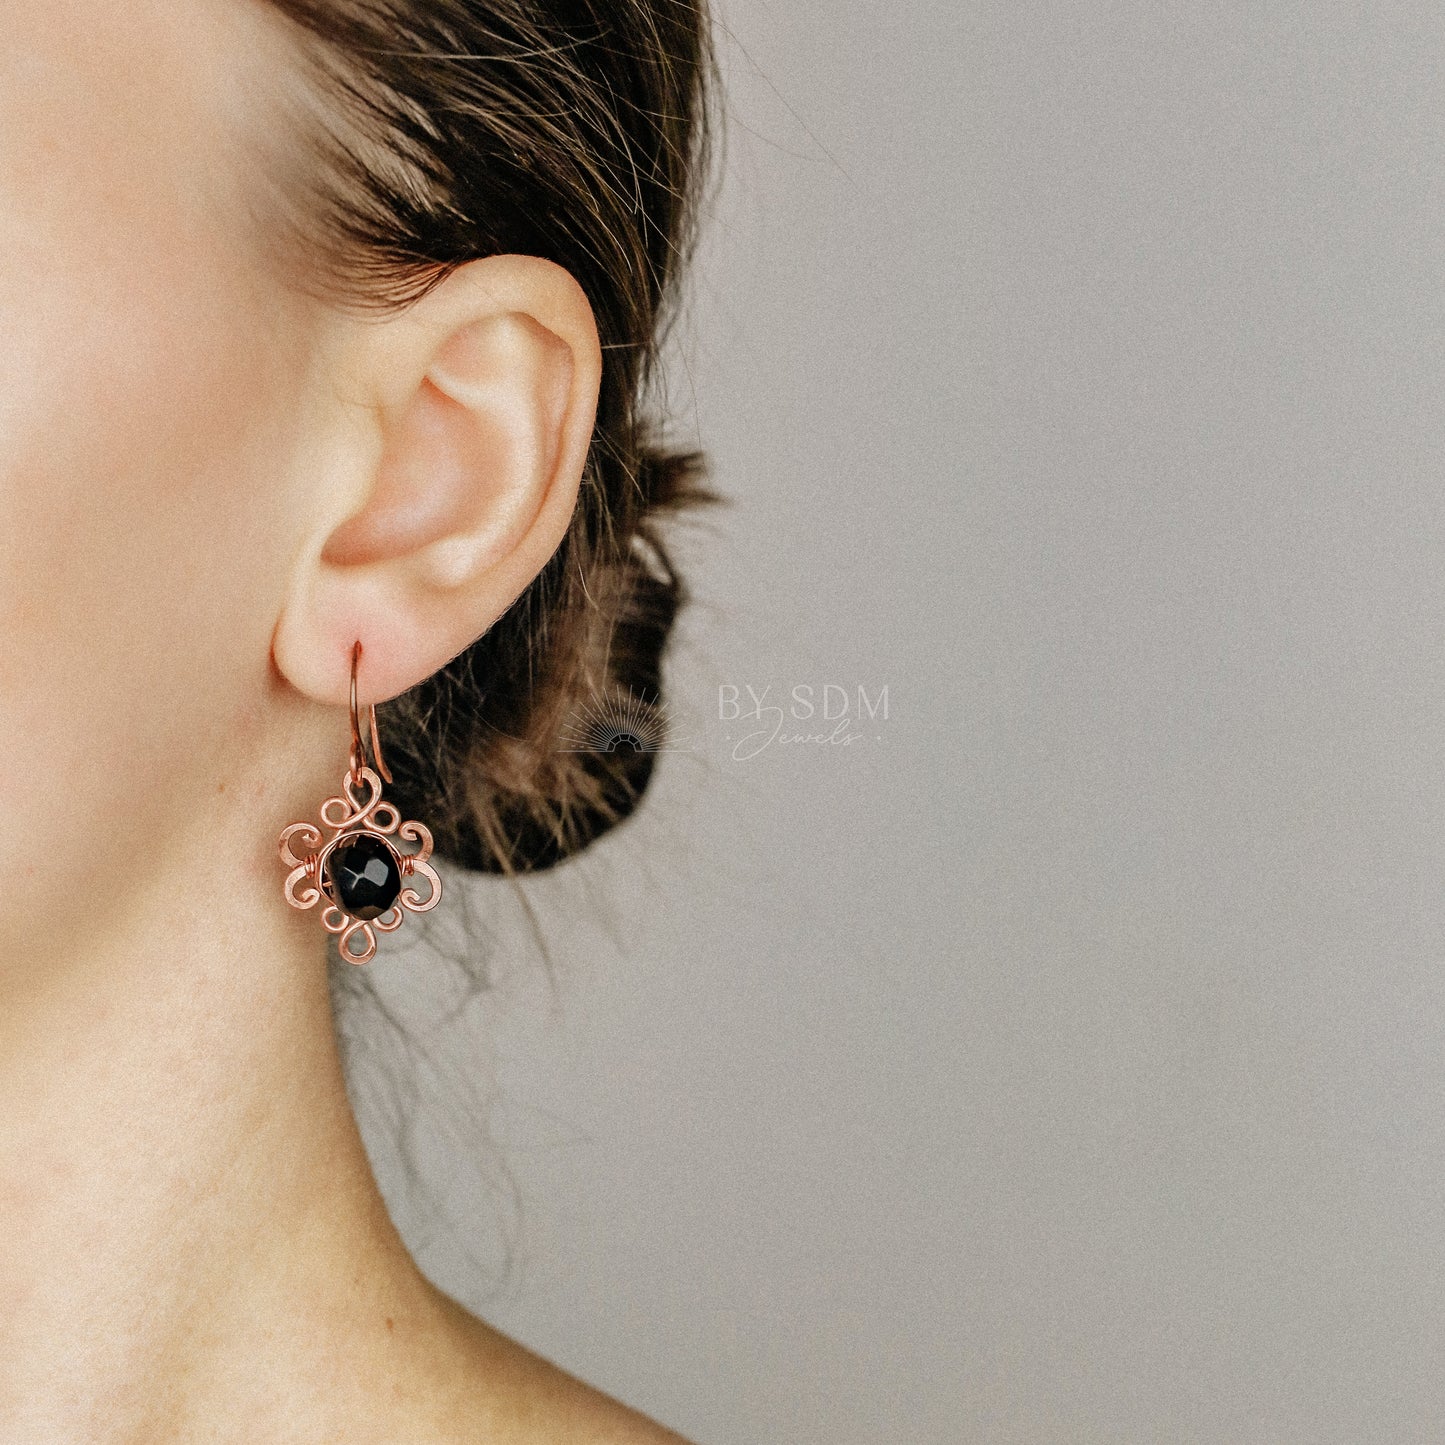 Black Onyx Knot Earrings • Handmade Earrings • Onyx Earrings • Copper Wire Wrapped Earrings • Black Stone • Gift for Her • BYSDMJEWELS